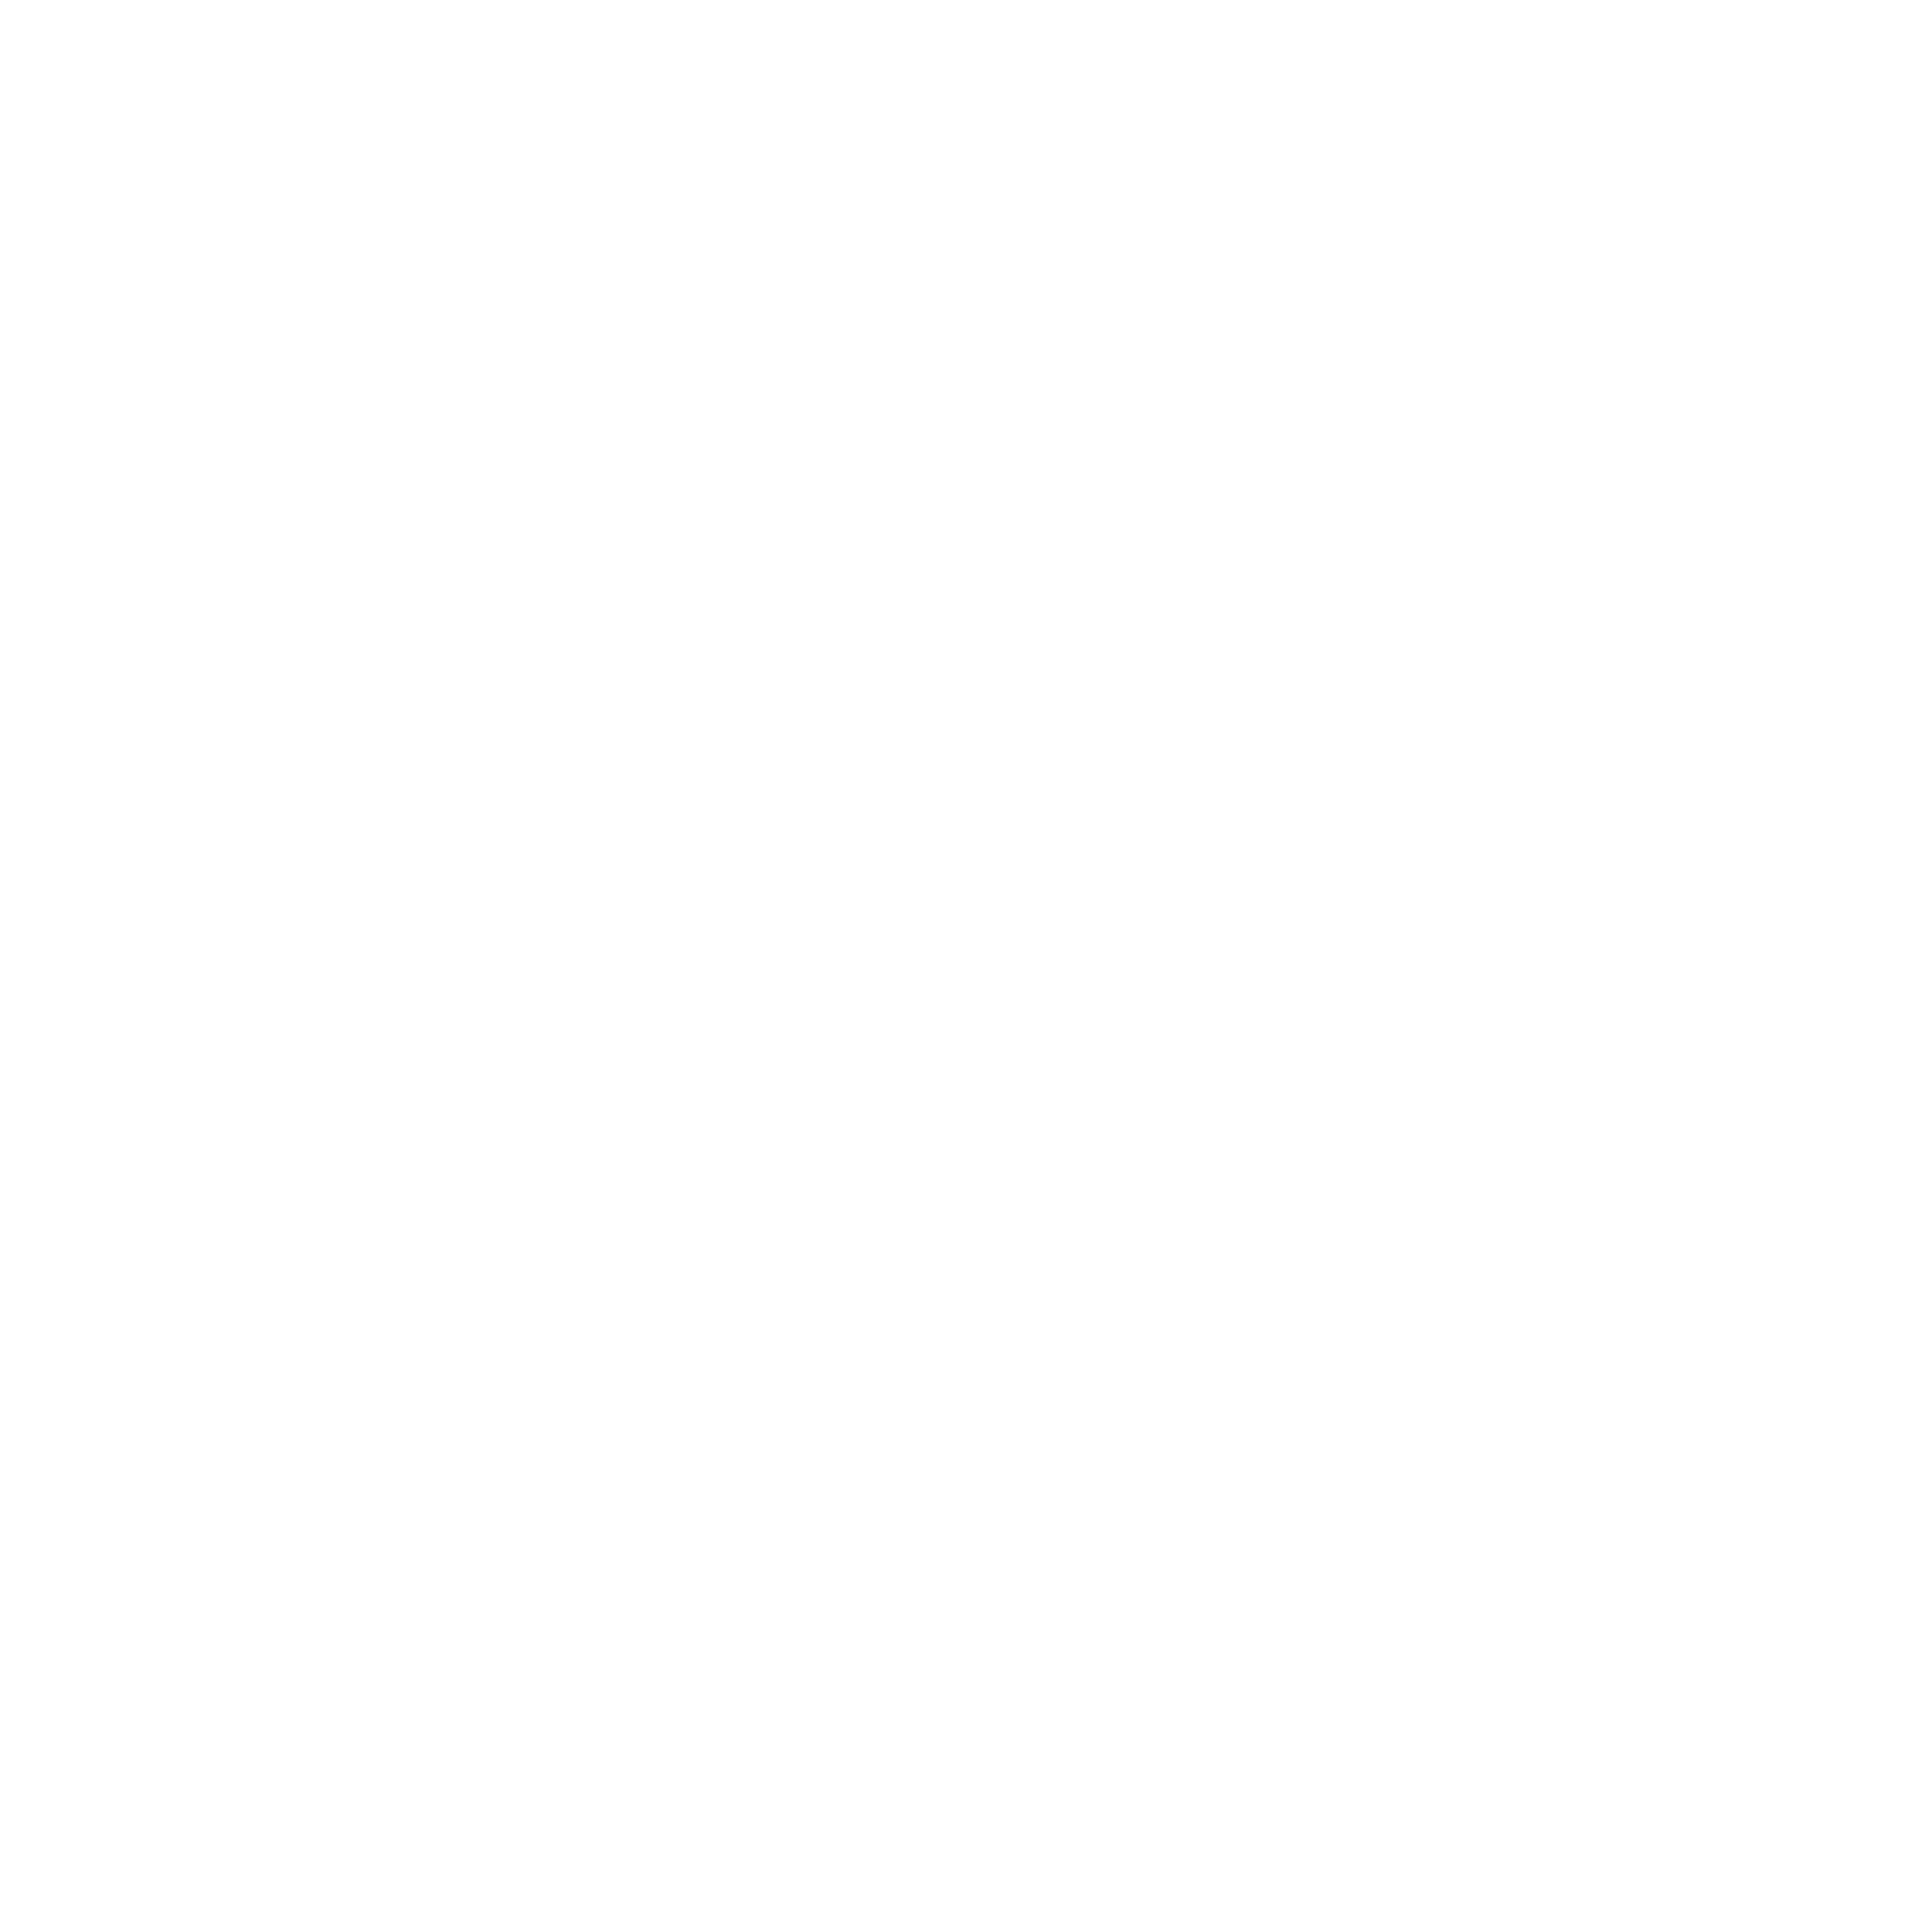 BobbyBlue Photography